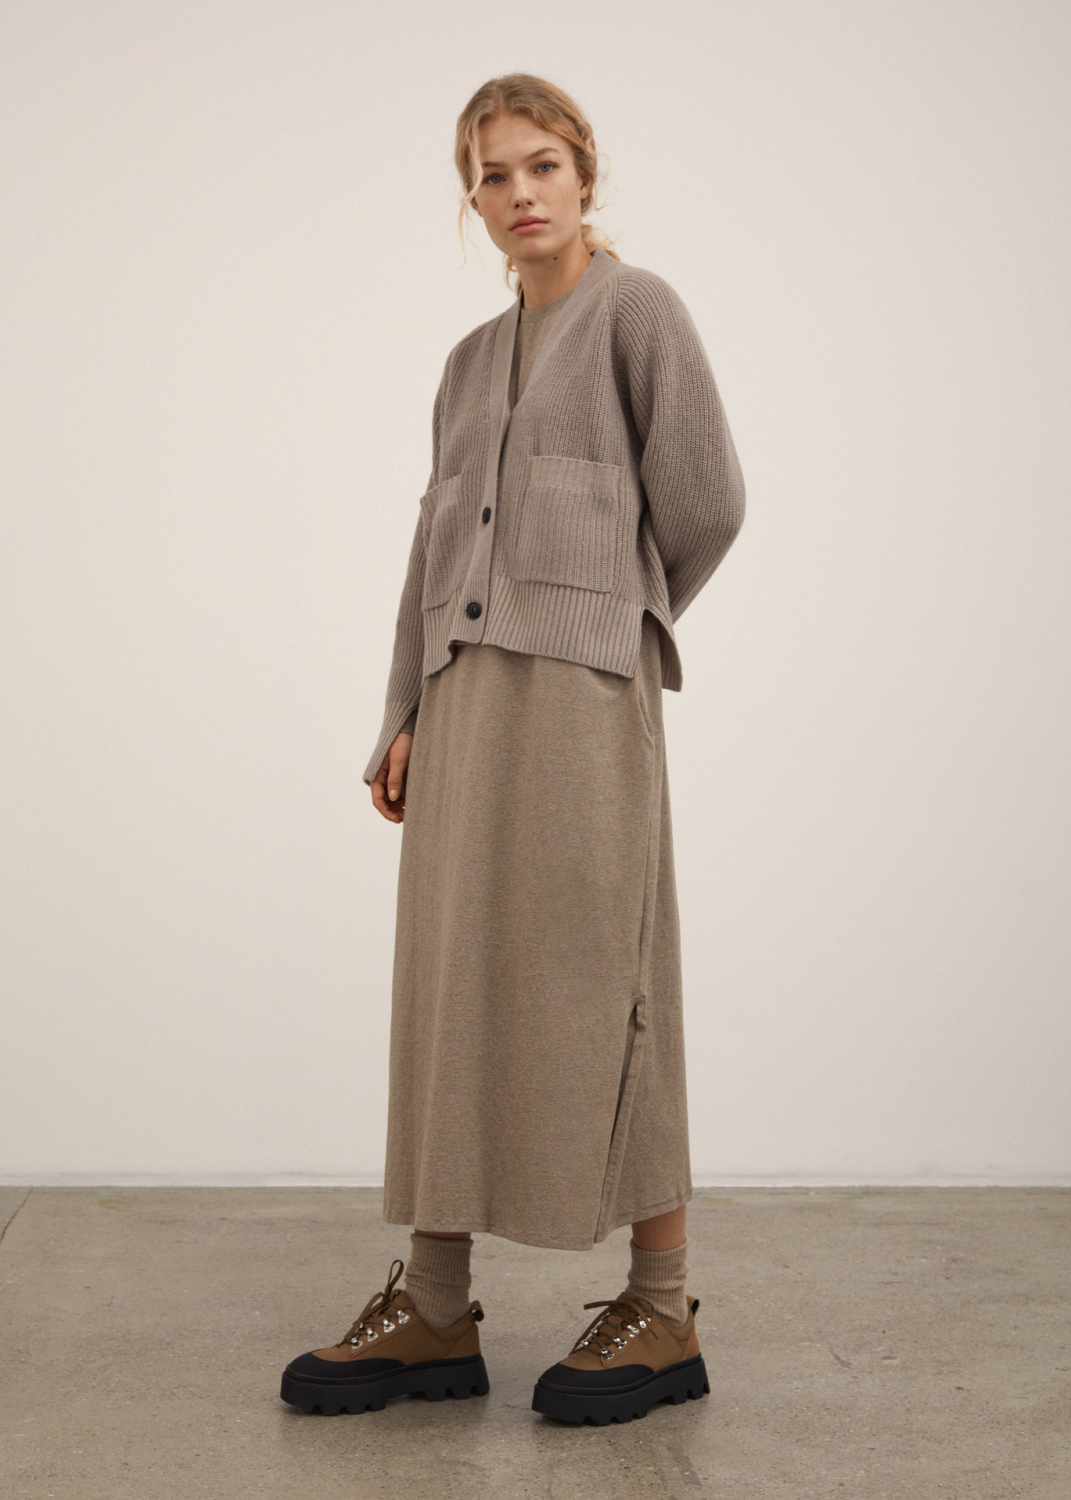 Kleider & Röcke - Long Sleeve Jersey Dress Thumbnail